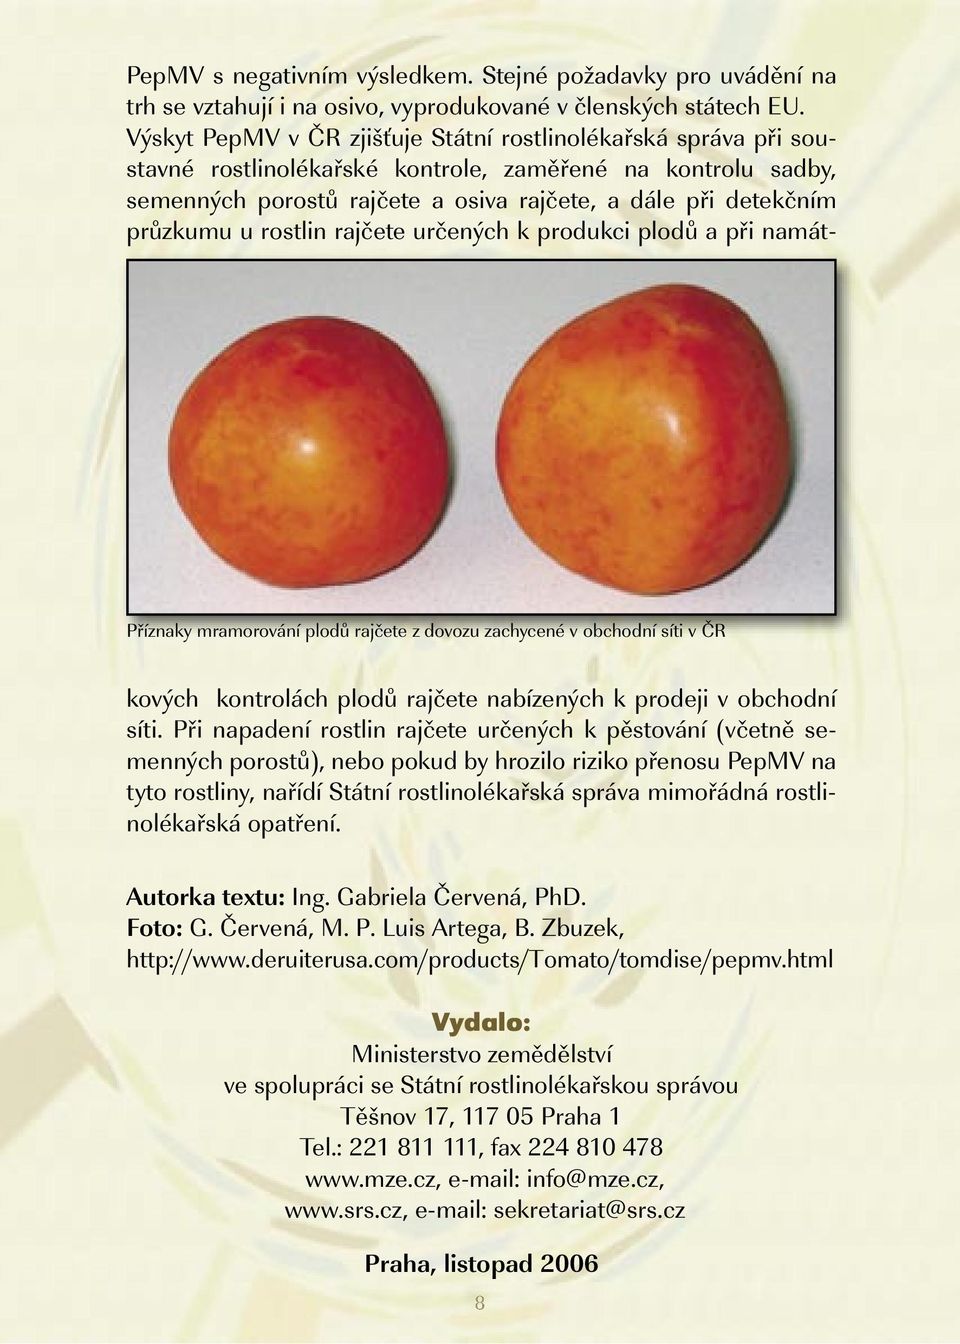 Výskyt PepMV v ČR zjišťuje Státní rostlinolékařská správa při soustavné rostlinolékařské kontrole, zaměřené na kontrolu sadby, semenných porostů rajčete a osiva rajčete, a dále při detekčním průzkumu